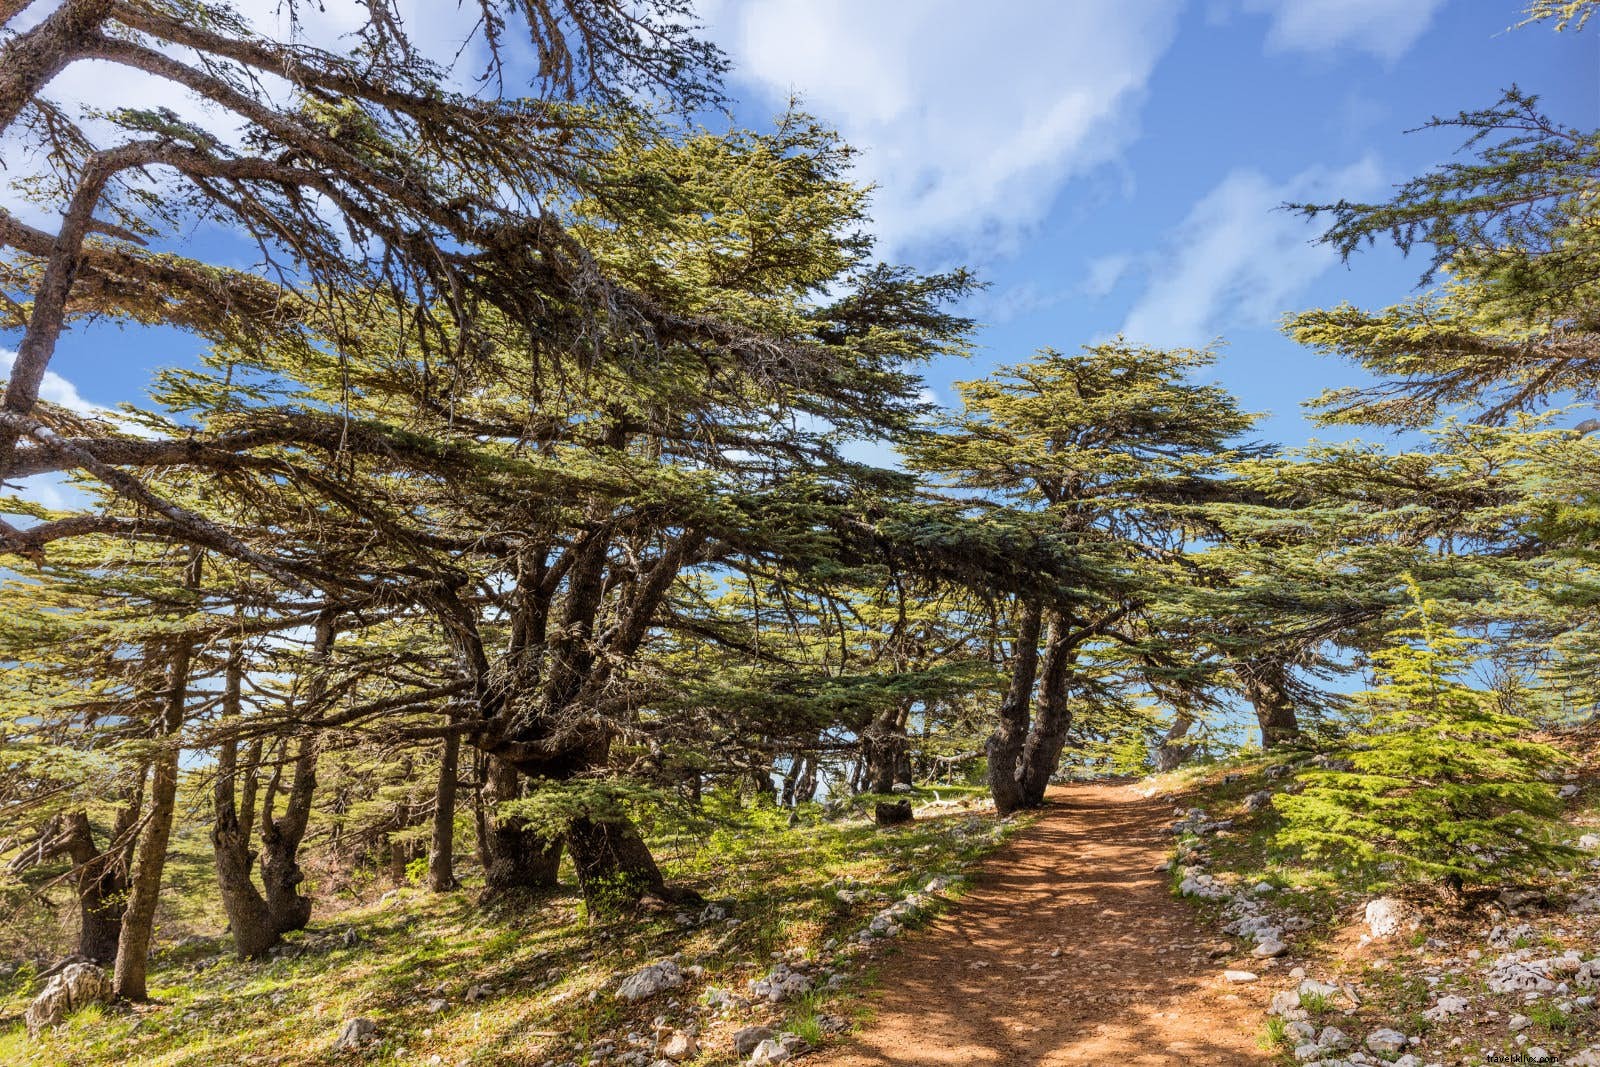 風光明媚な国境を越えたレバノンマウンテントレイルのハイキング 